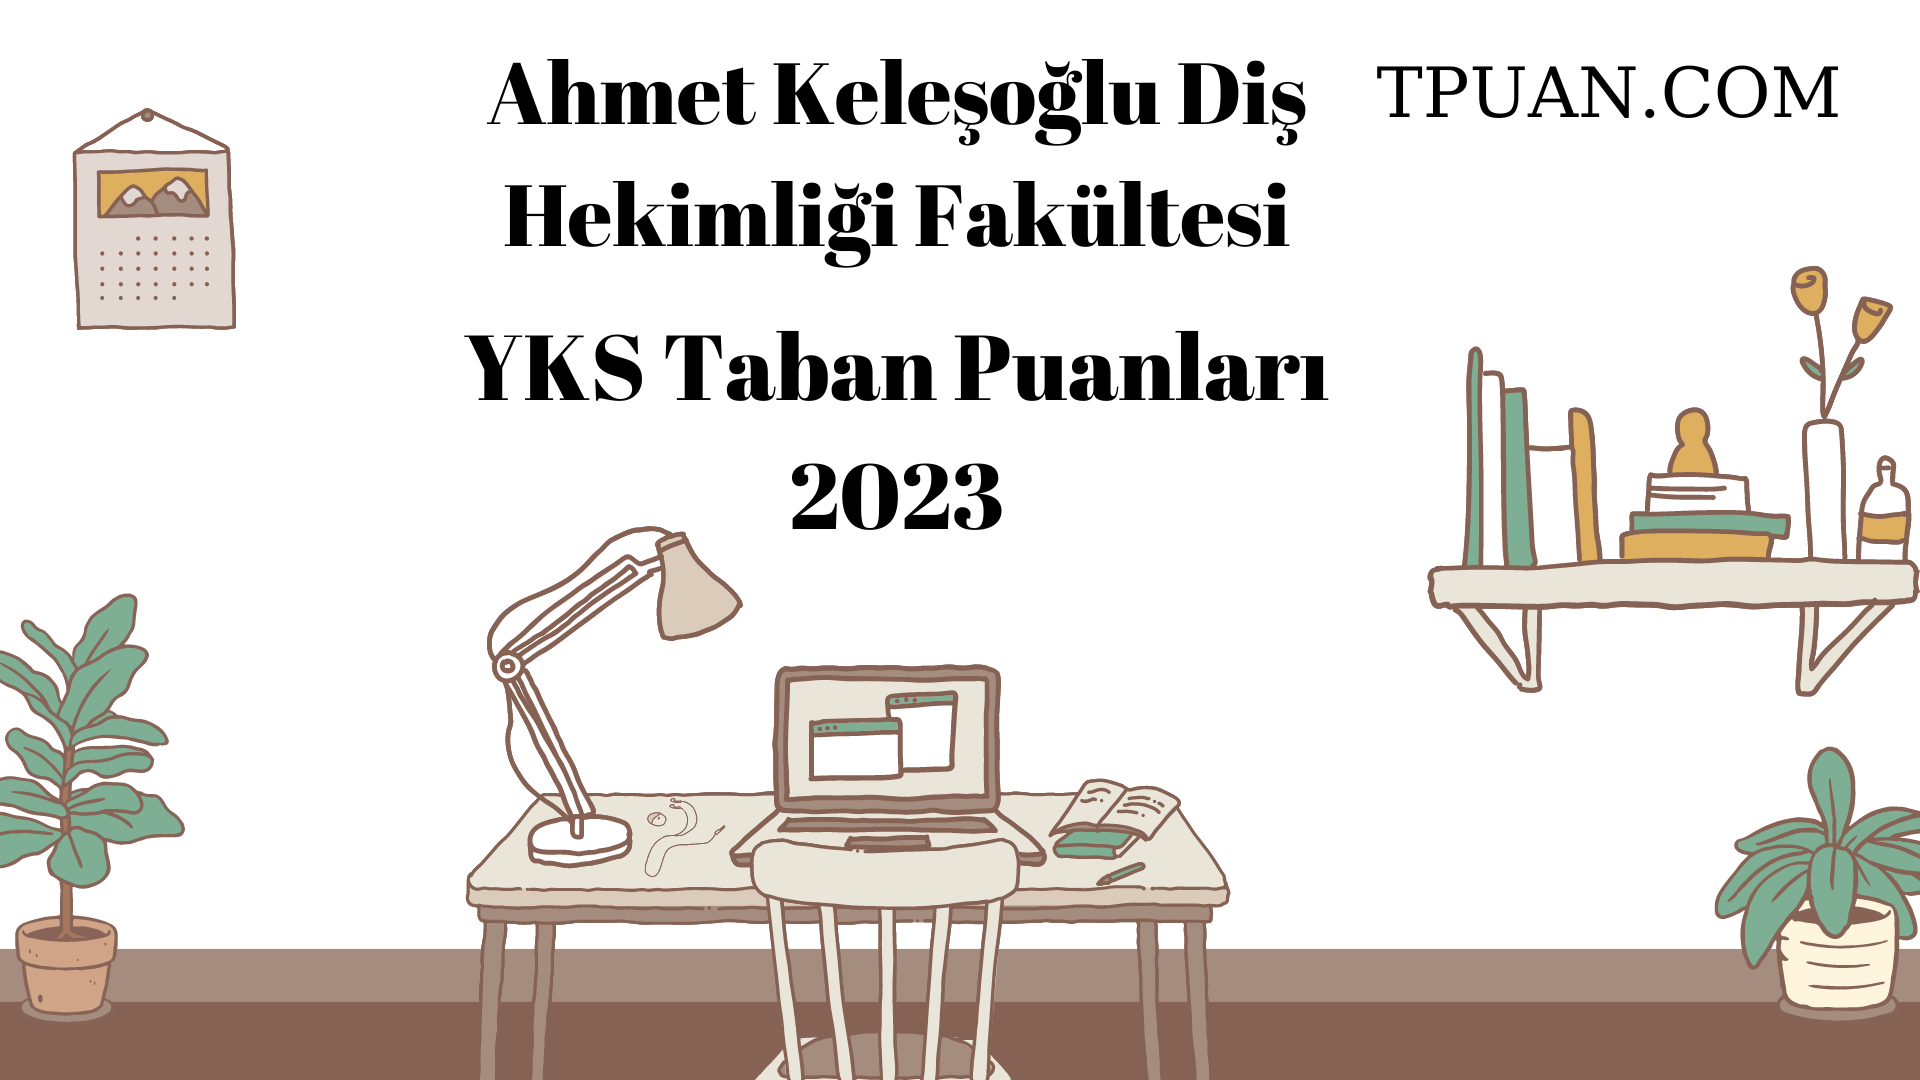  Ahmet Keleşoğlu Diş Hekimliği Fakültesi YKS Taban Puanları 2023